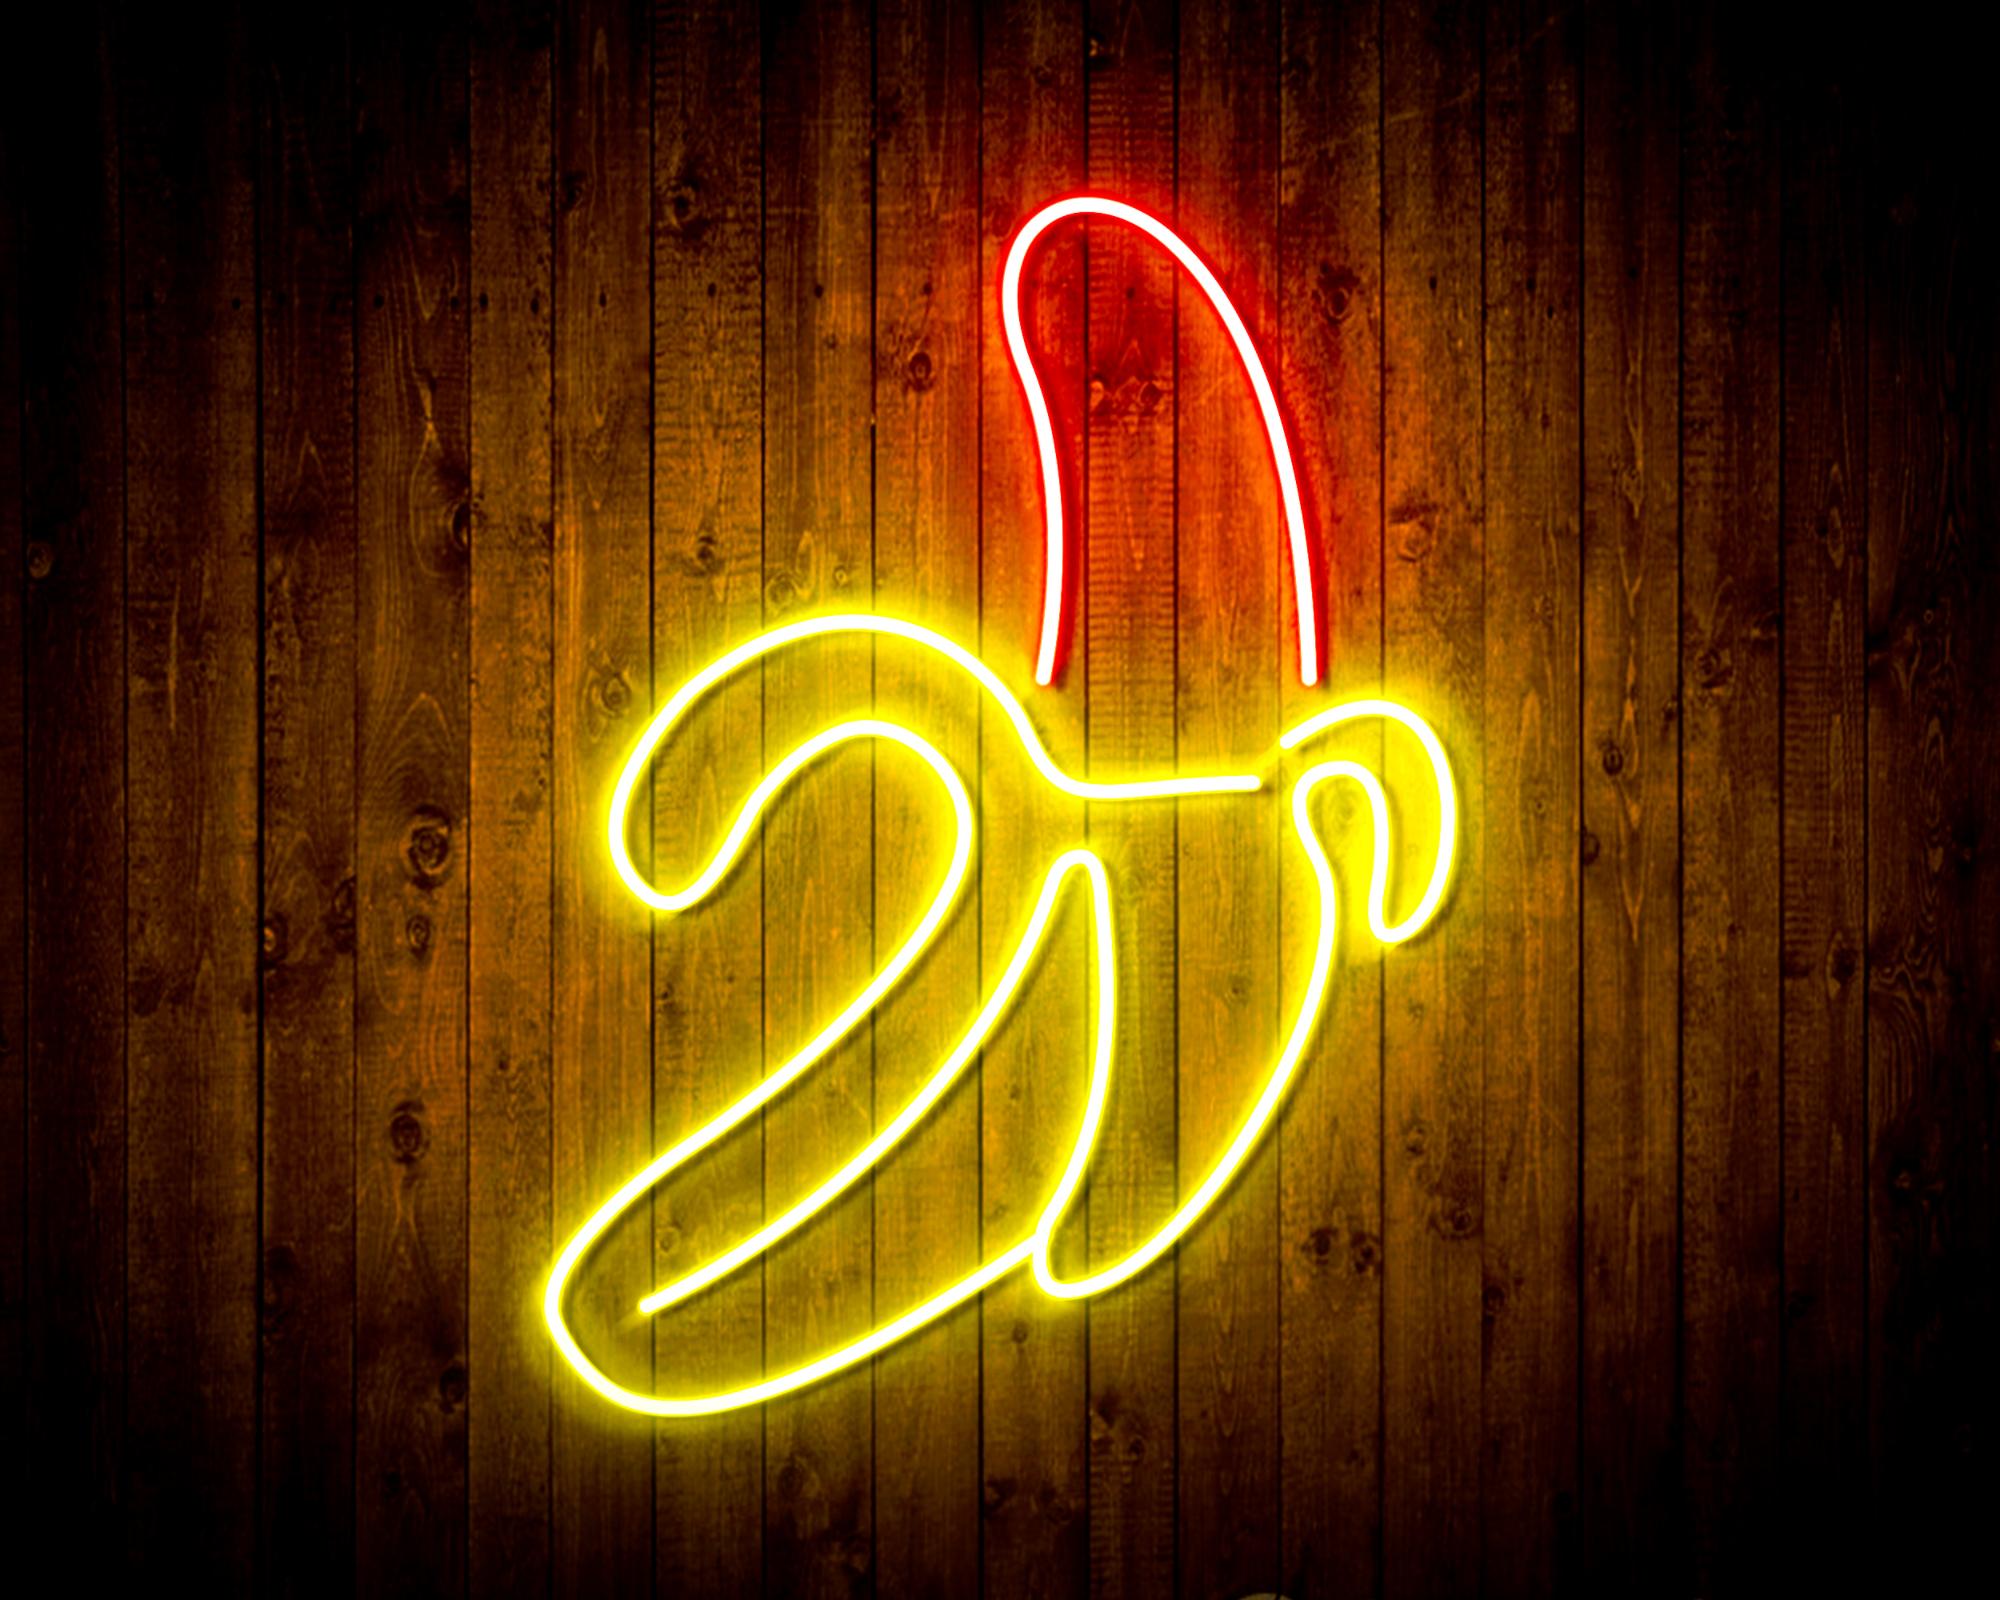 Banana LED Neon Sign Wall Light